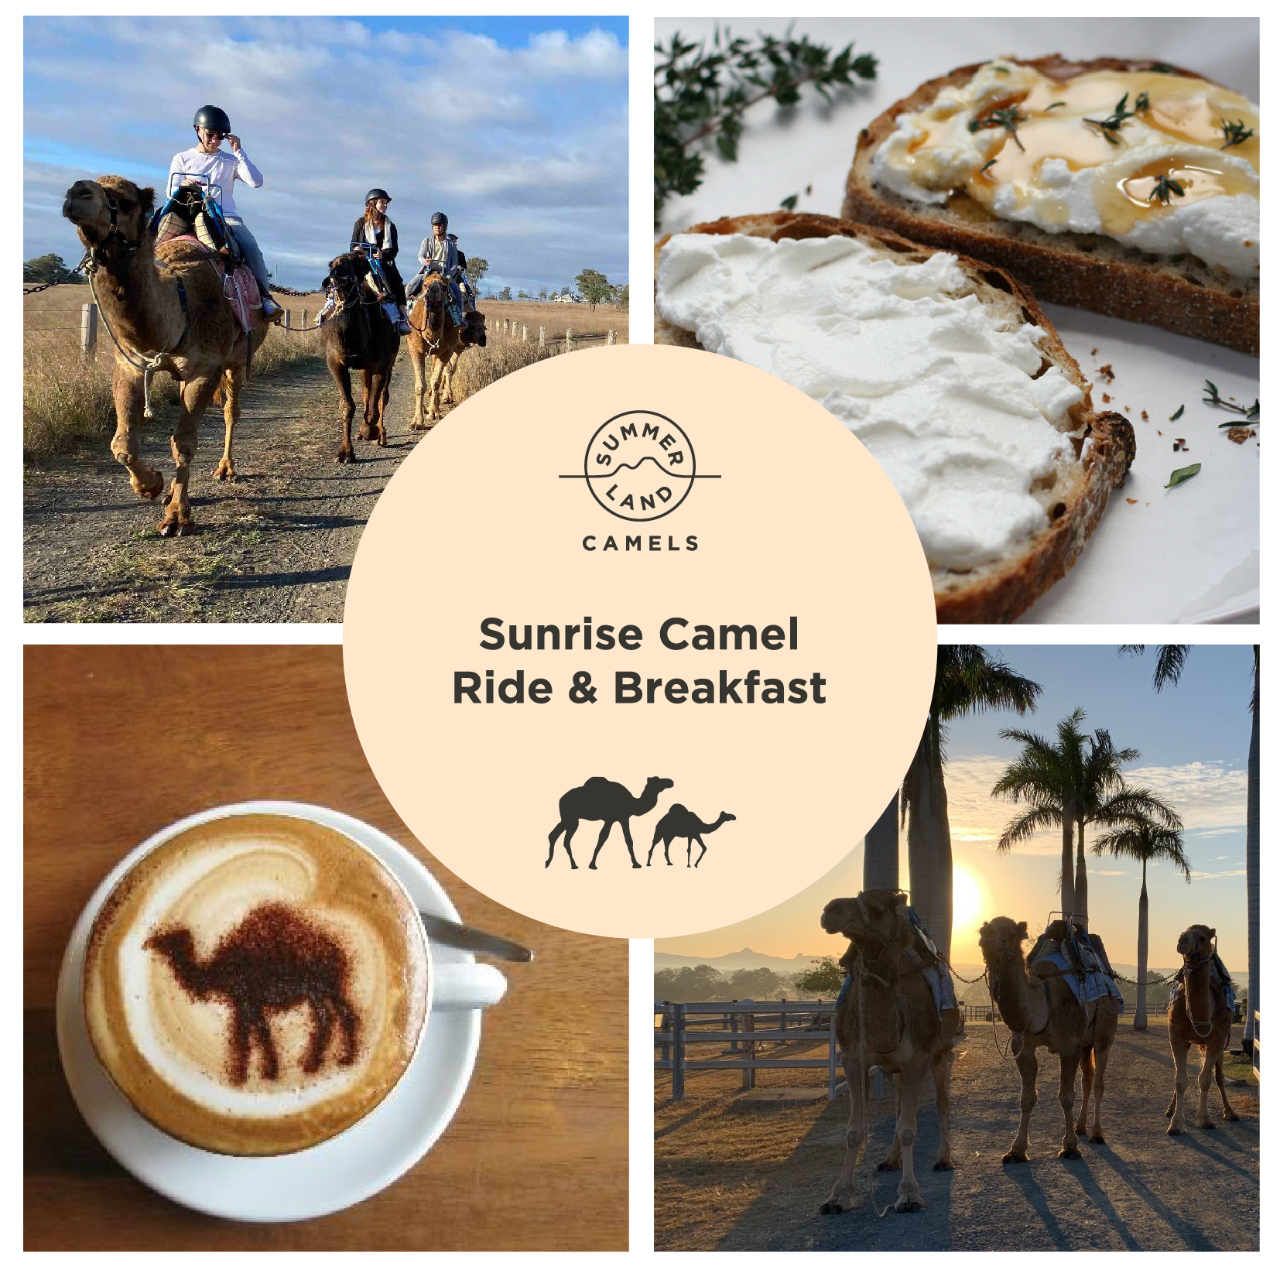 Sunrise Camel Ride & Breakfast